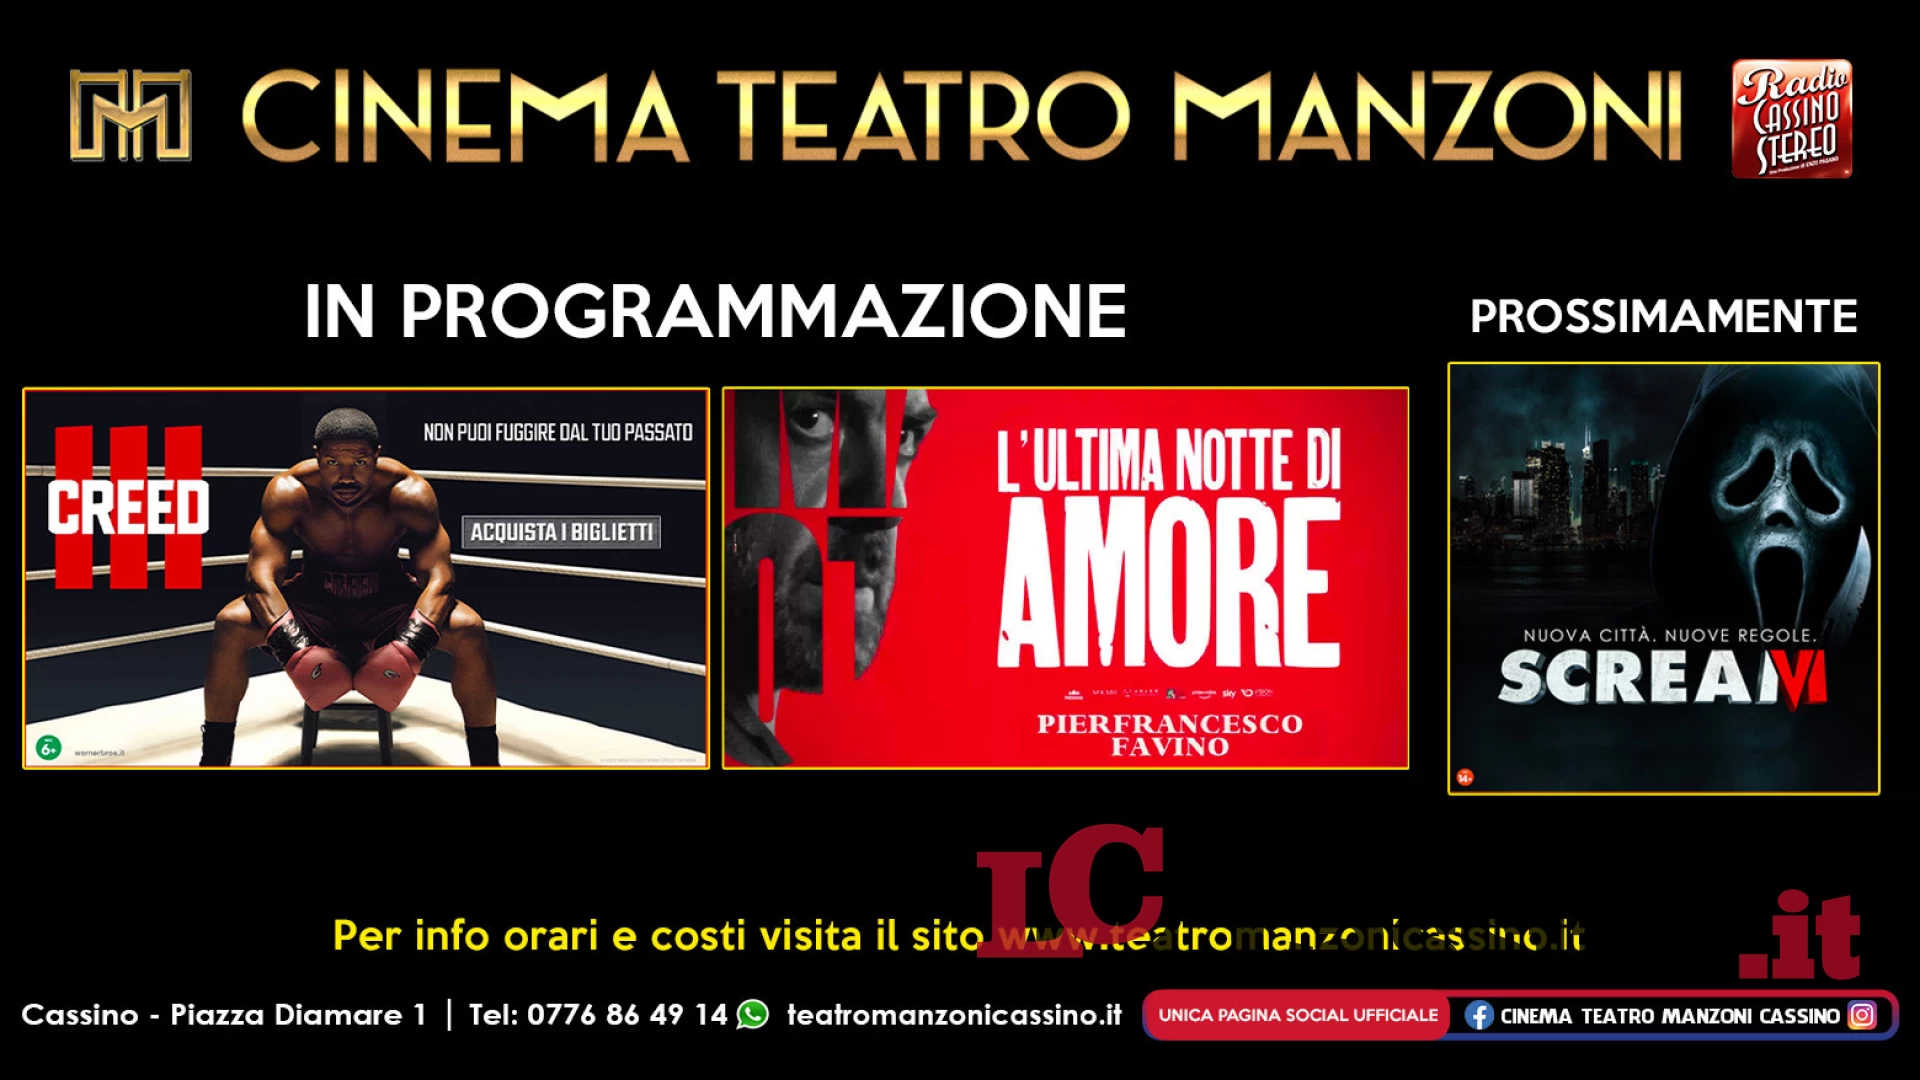 Cinema Teatro Manzoni Cassino, arriva “L'ultima notte di amore" e prossimamente "Scream VI"